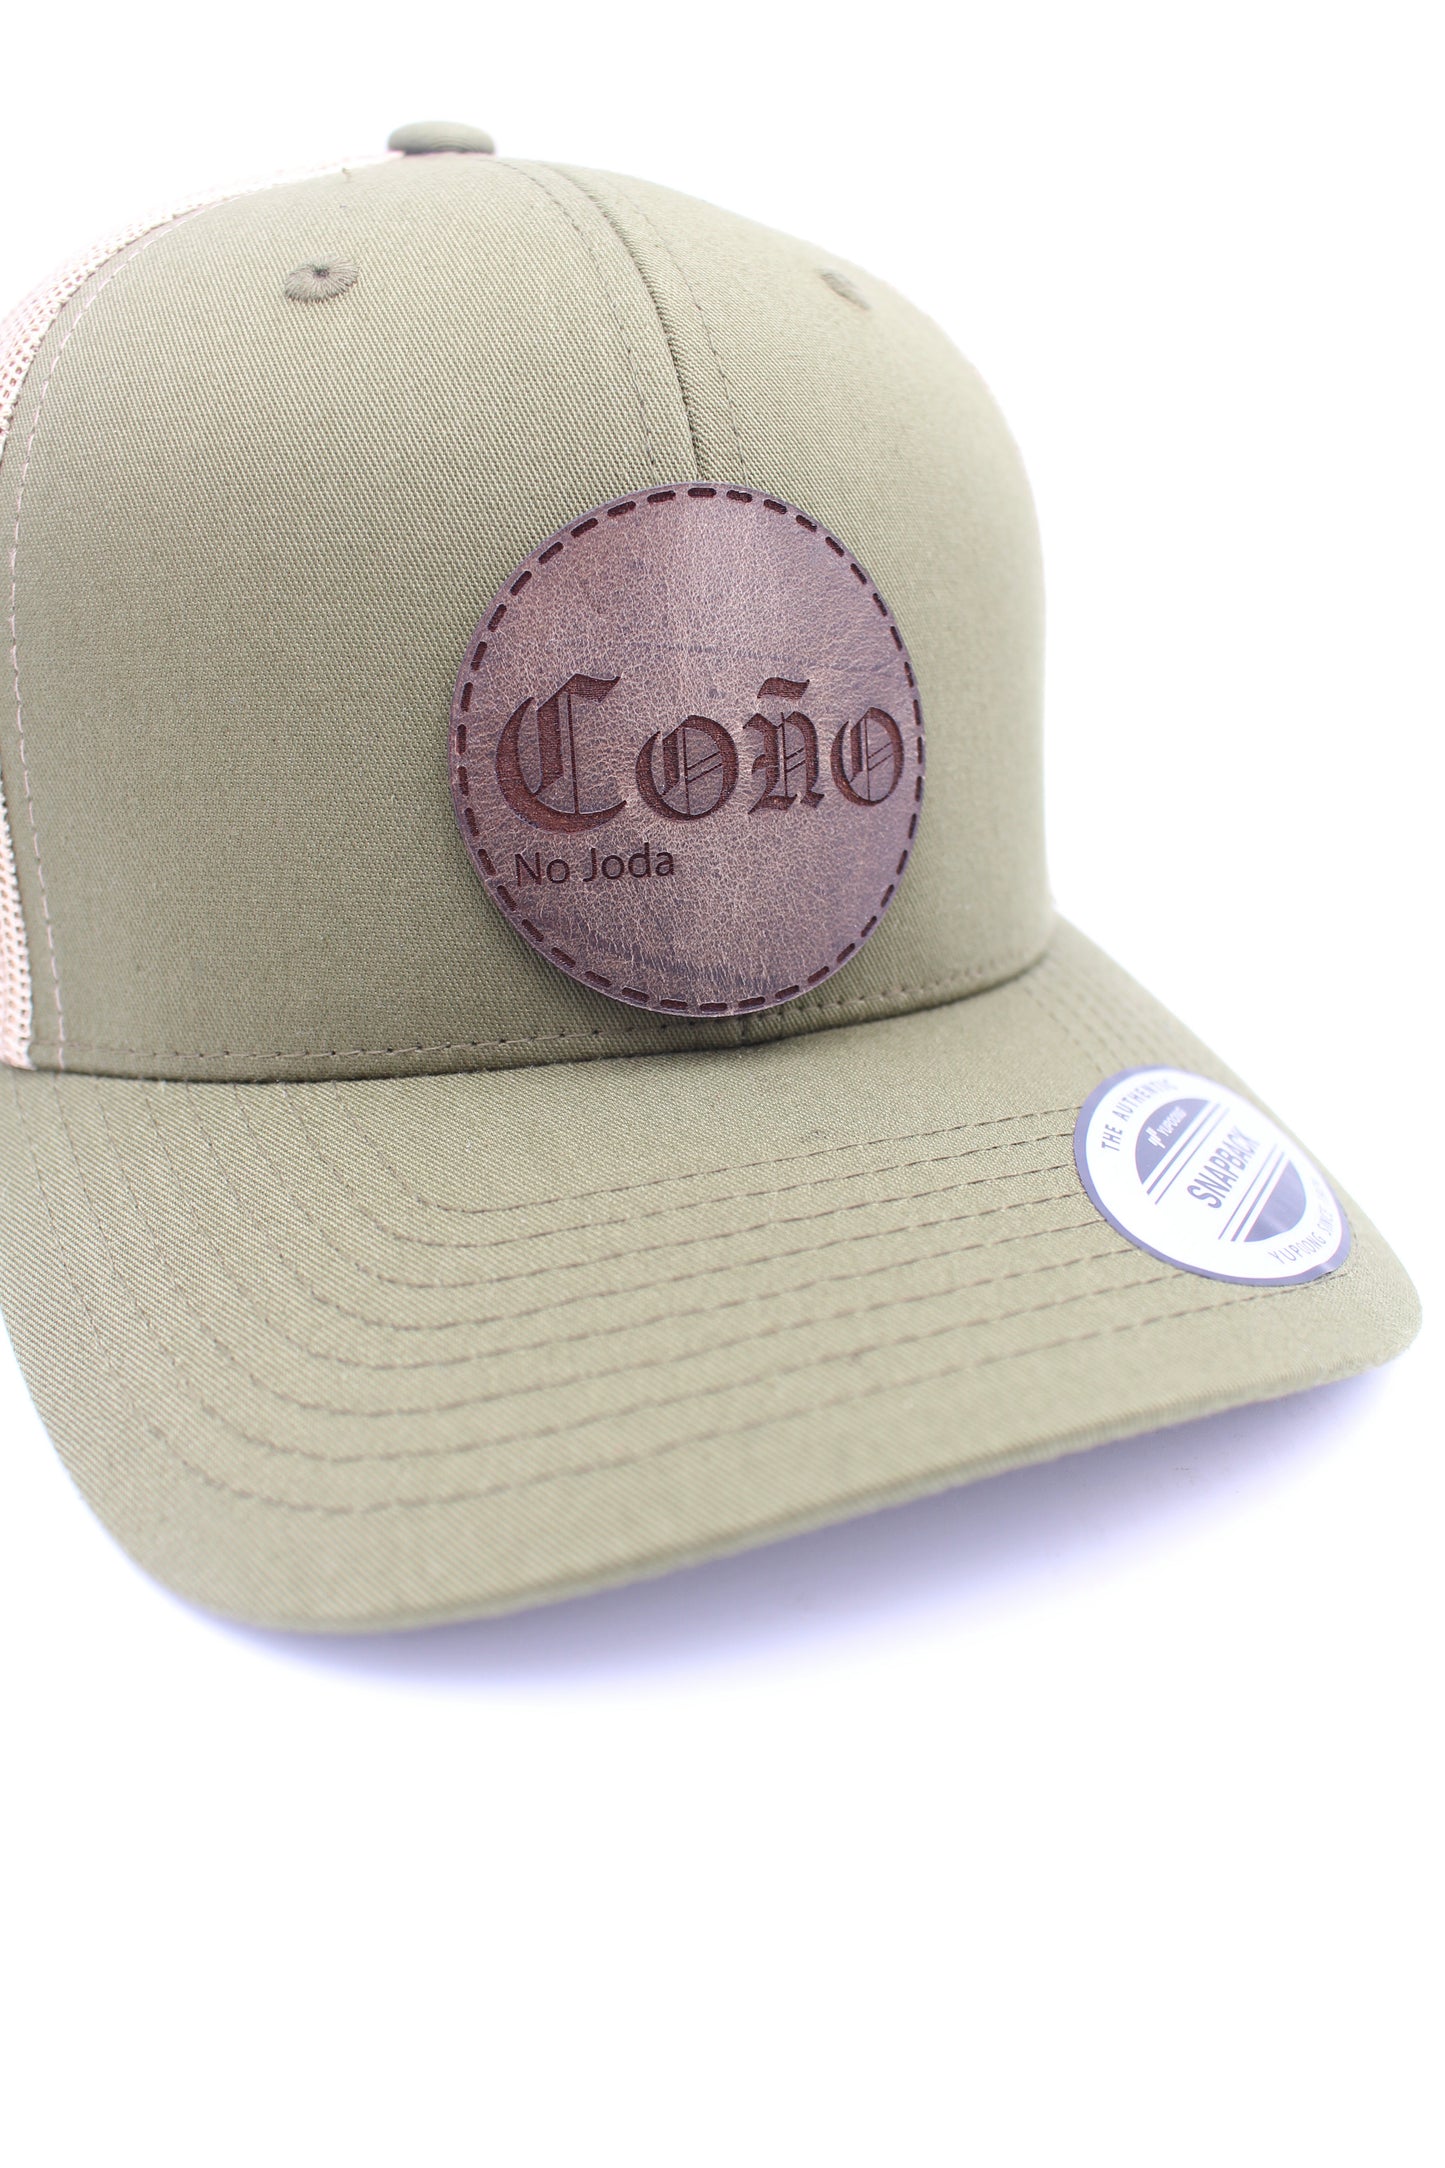 Coño (no joda) Leather Patch Hat | Coño Trucker Hat | Dominican Art Trucker Hat